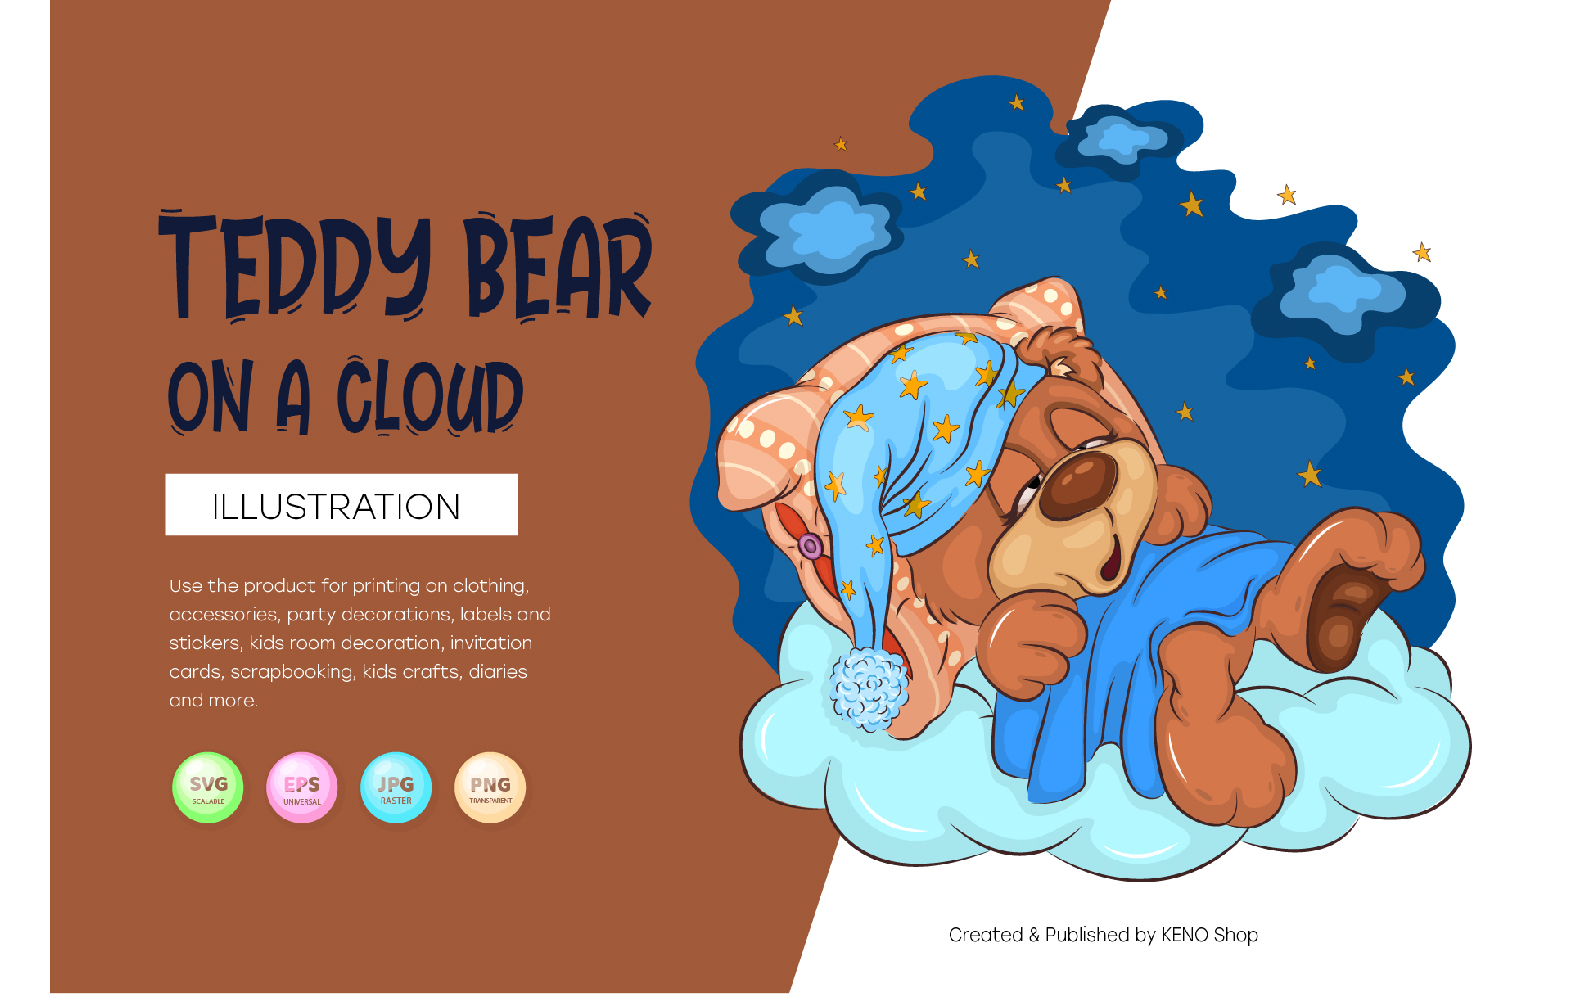 Cartoon Teddy Bear on a cloud. T-Shirt, PNG, SVG.